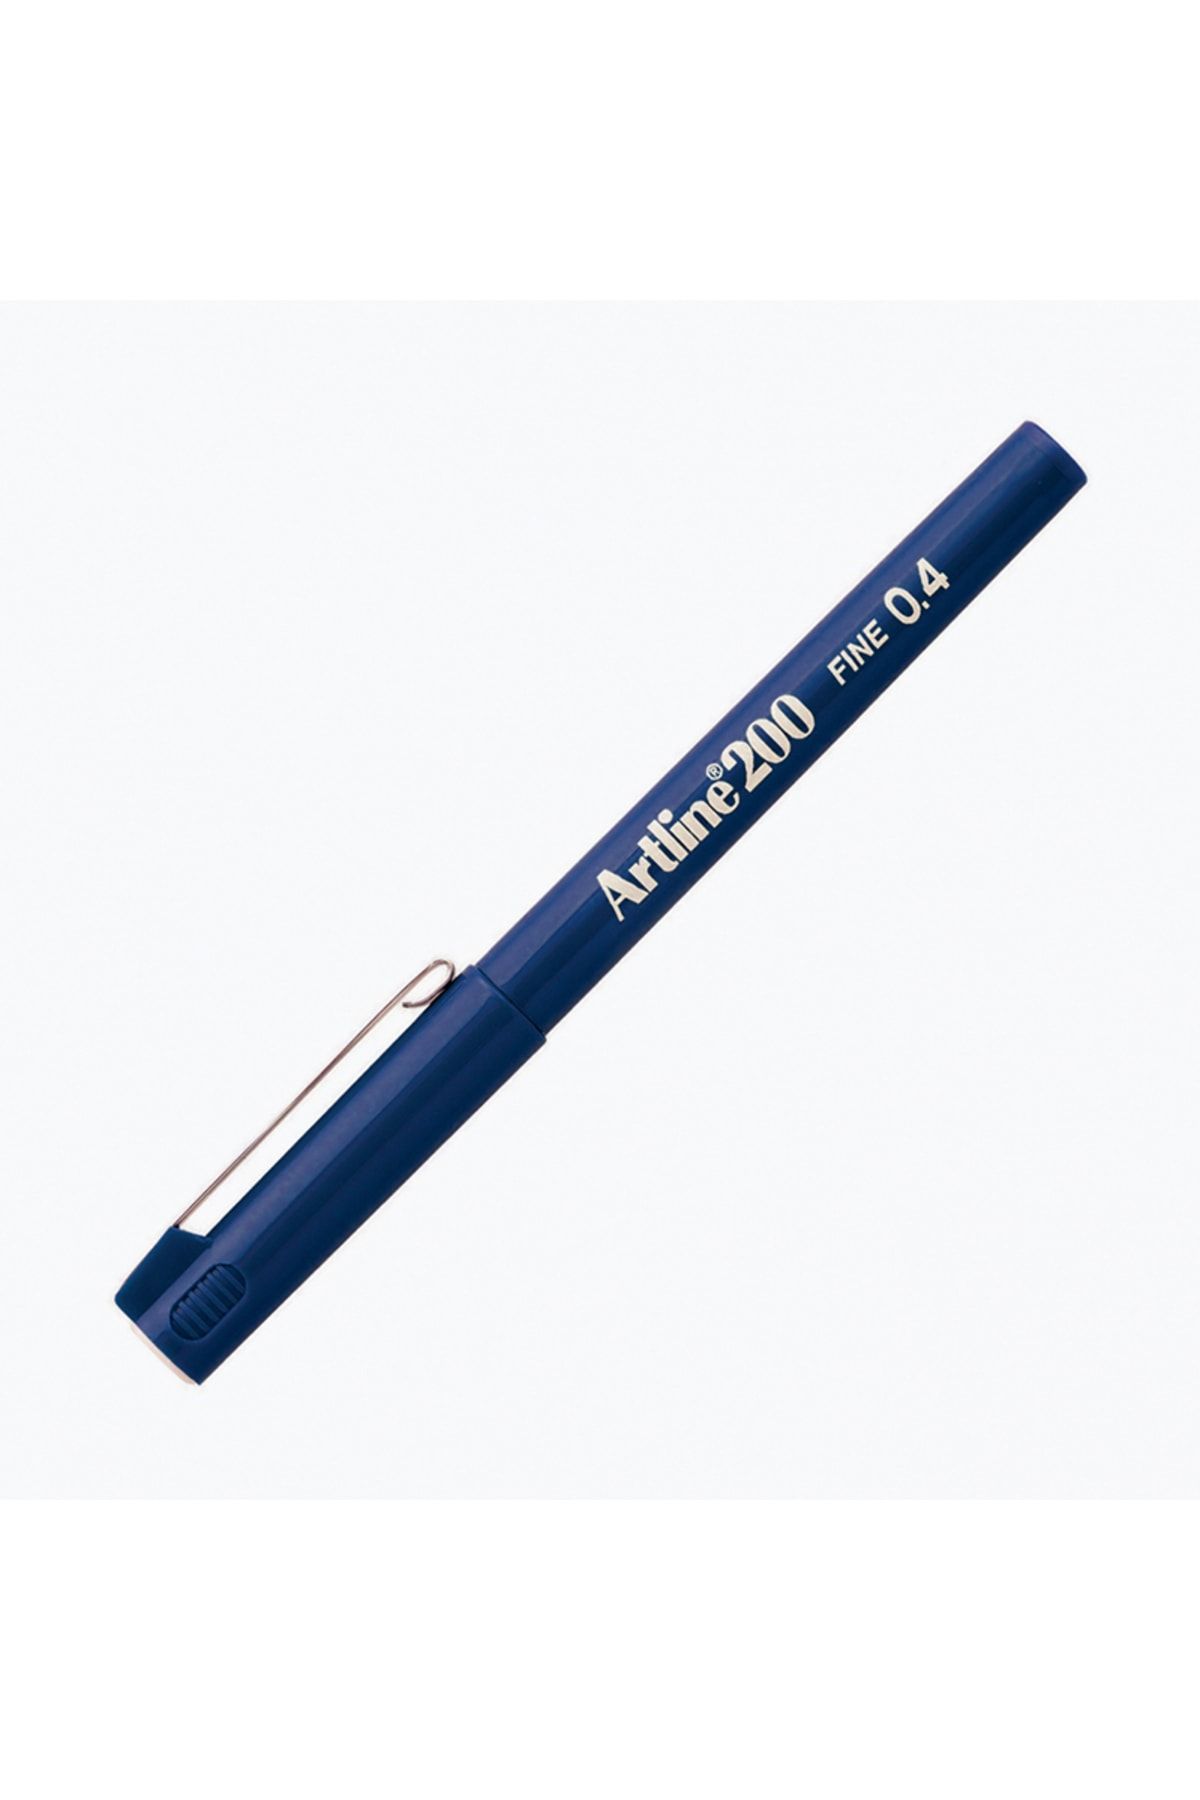 artline 200 Fineliner Yazı Ve Çizim Kalemi 0,4mm Royal Mavi